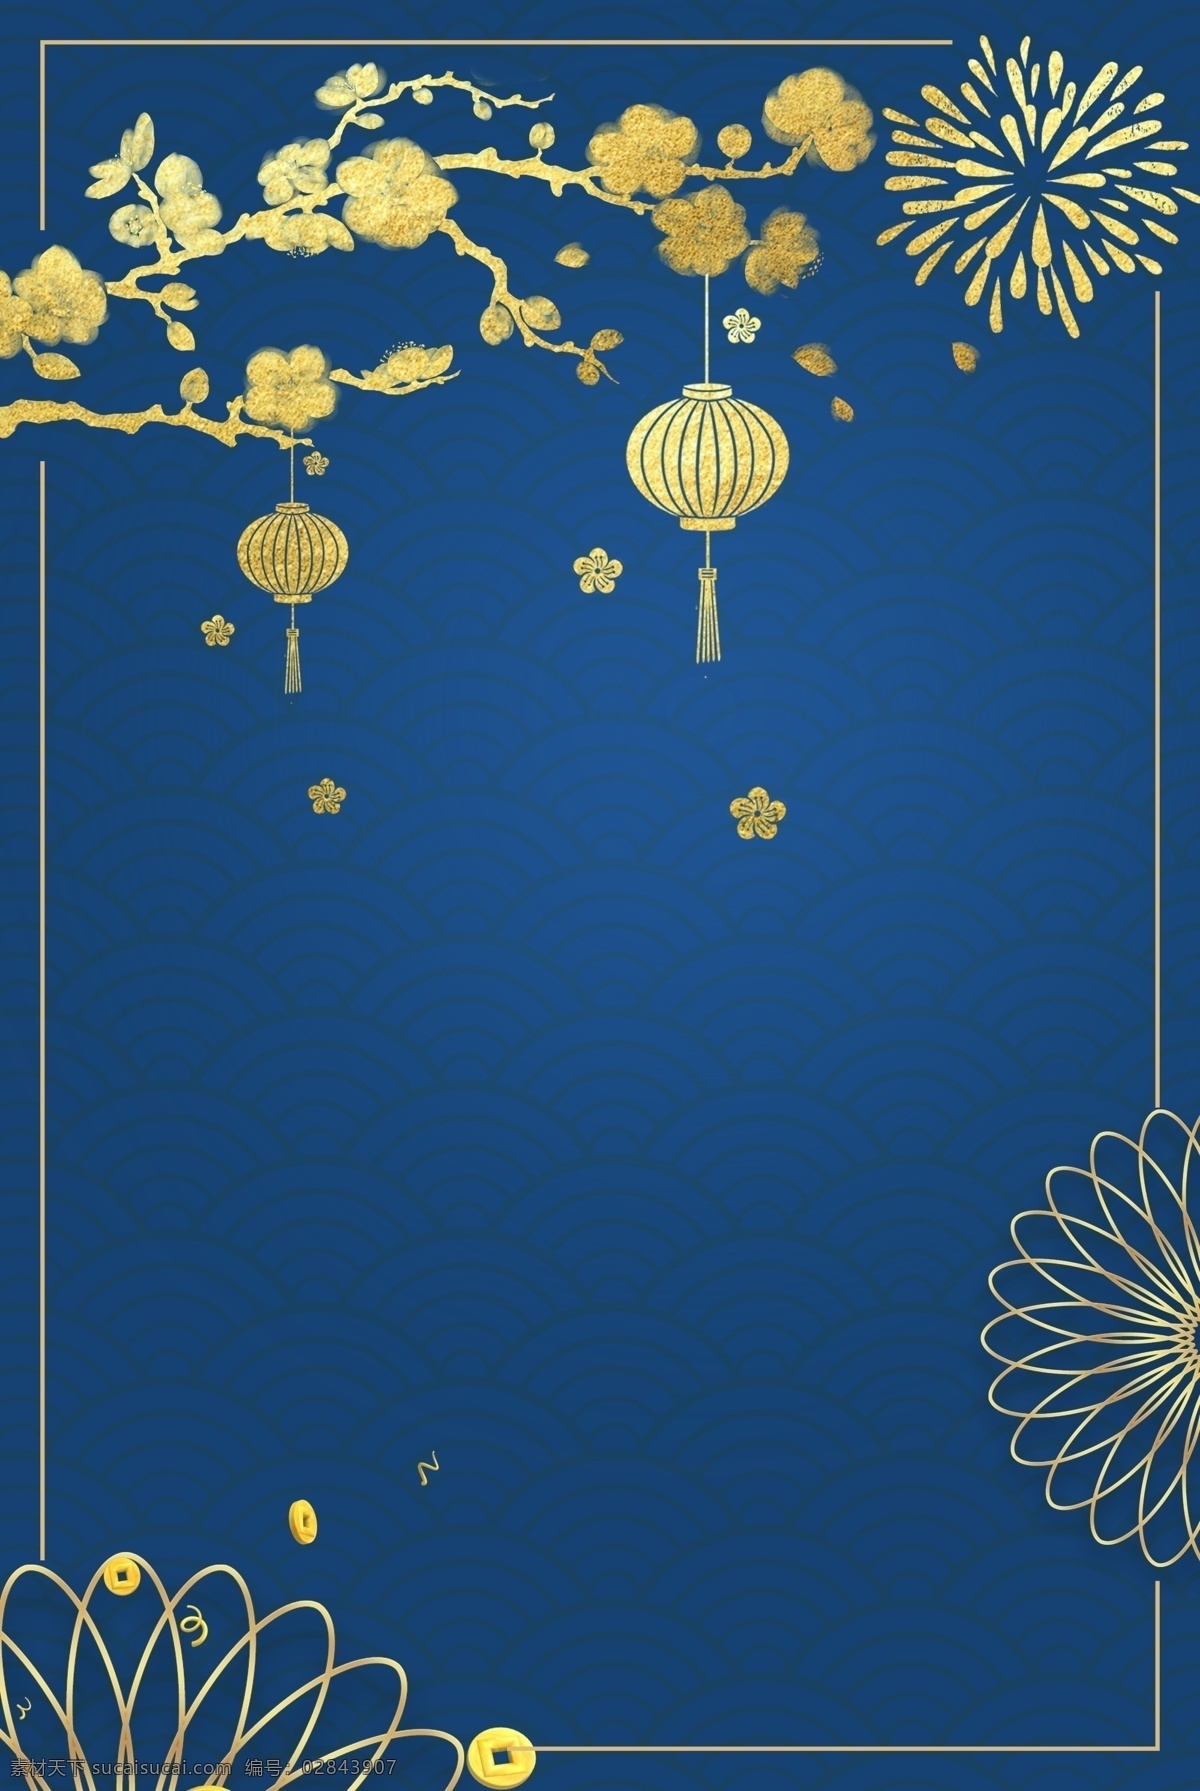 中国 风 猪年 烫金 大气 春节 背景 中国风 蓝色背景 灯笼 祥云 腊梅 边框 新年